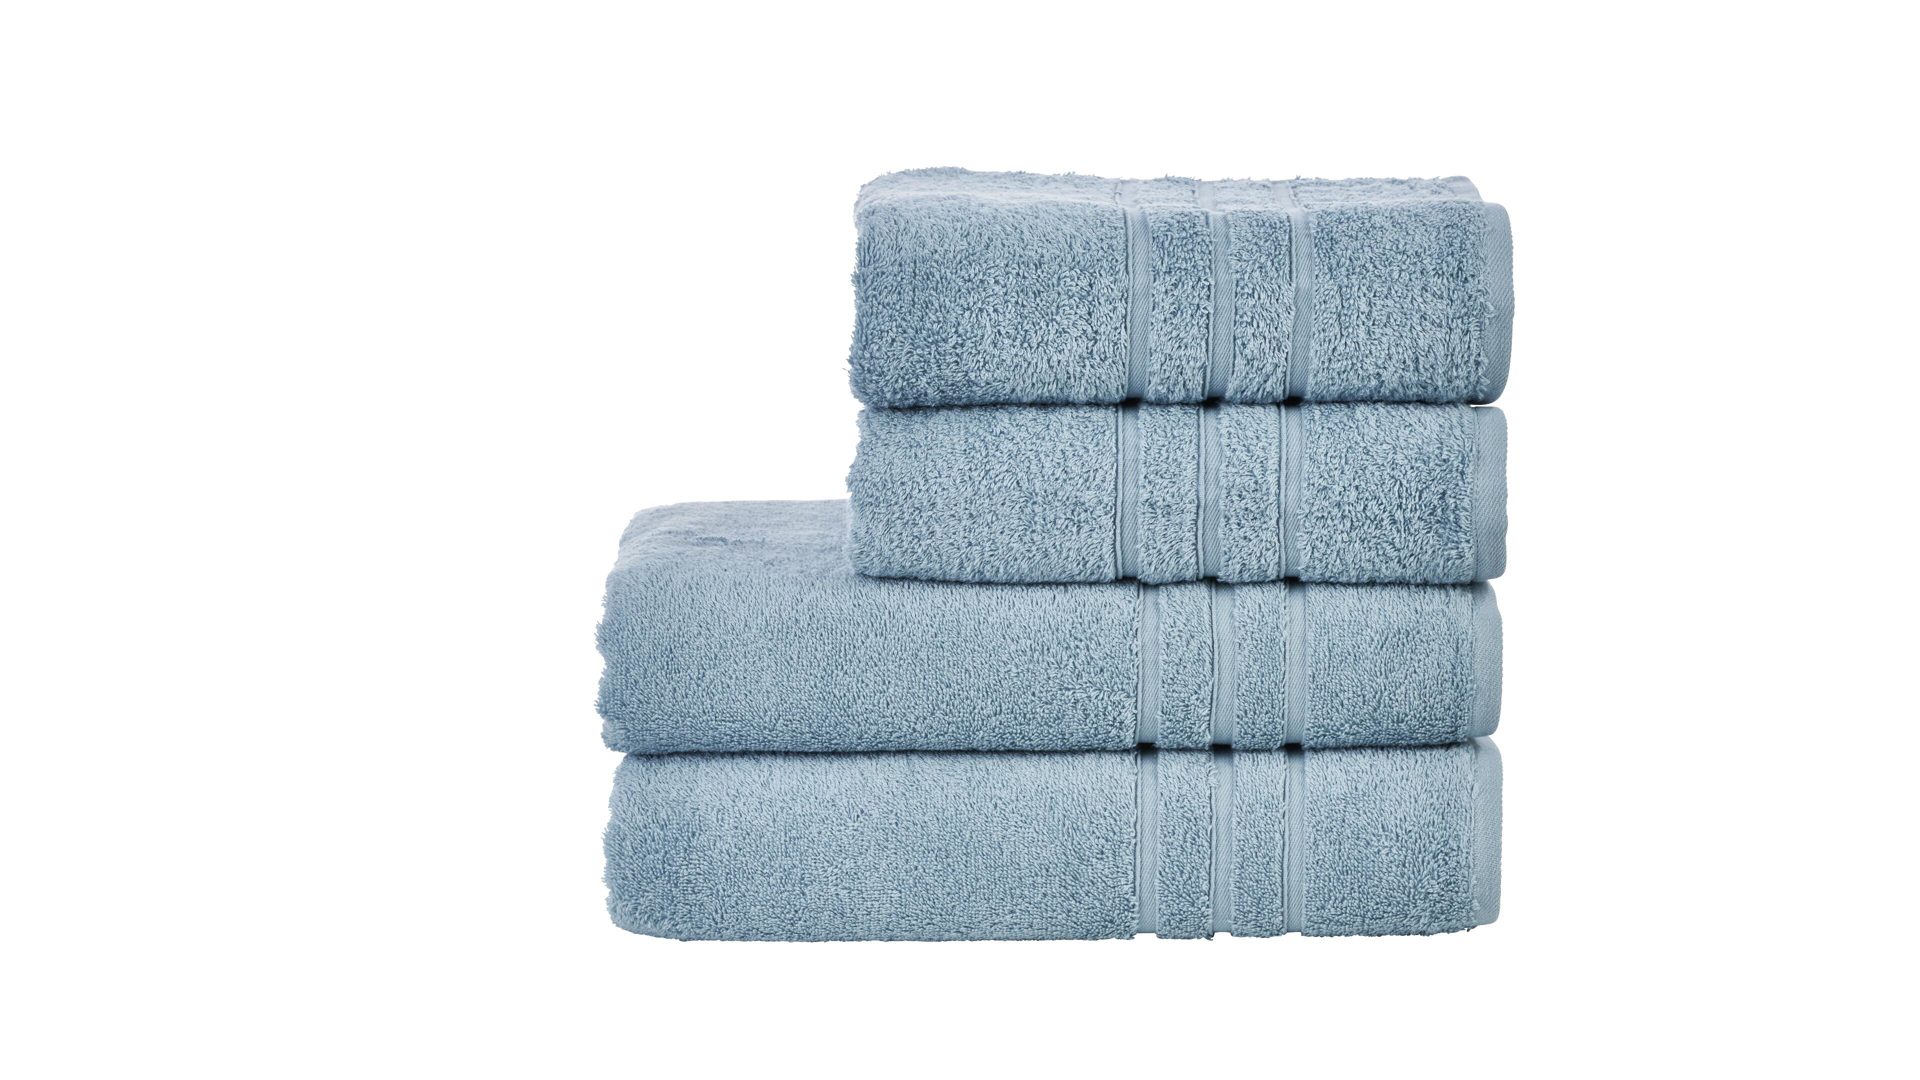 Handtuch-Set Done.® aus Stoff in Blau done.® Handtuch-Set Daily Uni oceanfarbene Baumwolle – vierteilig